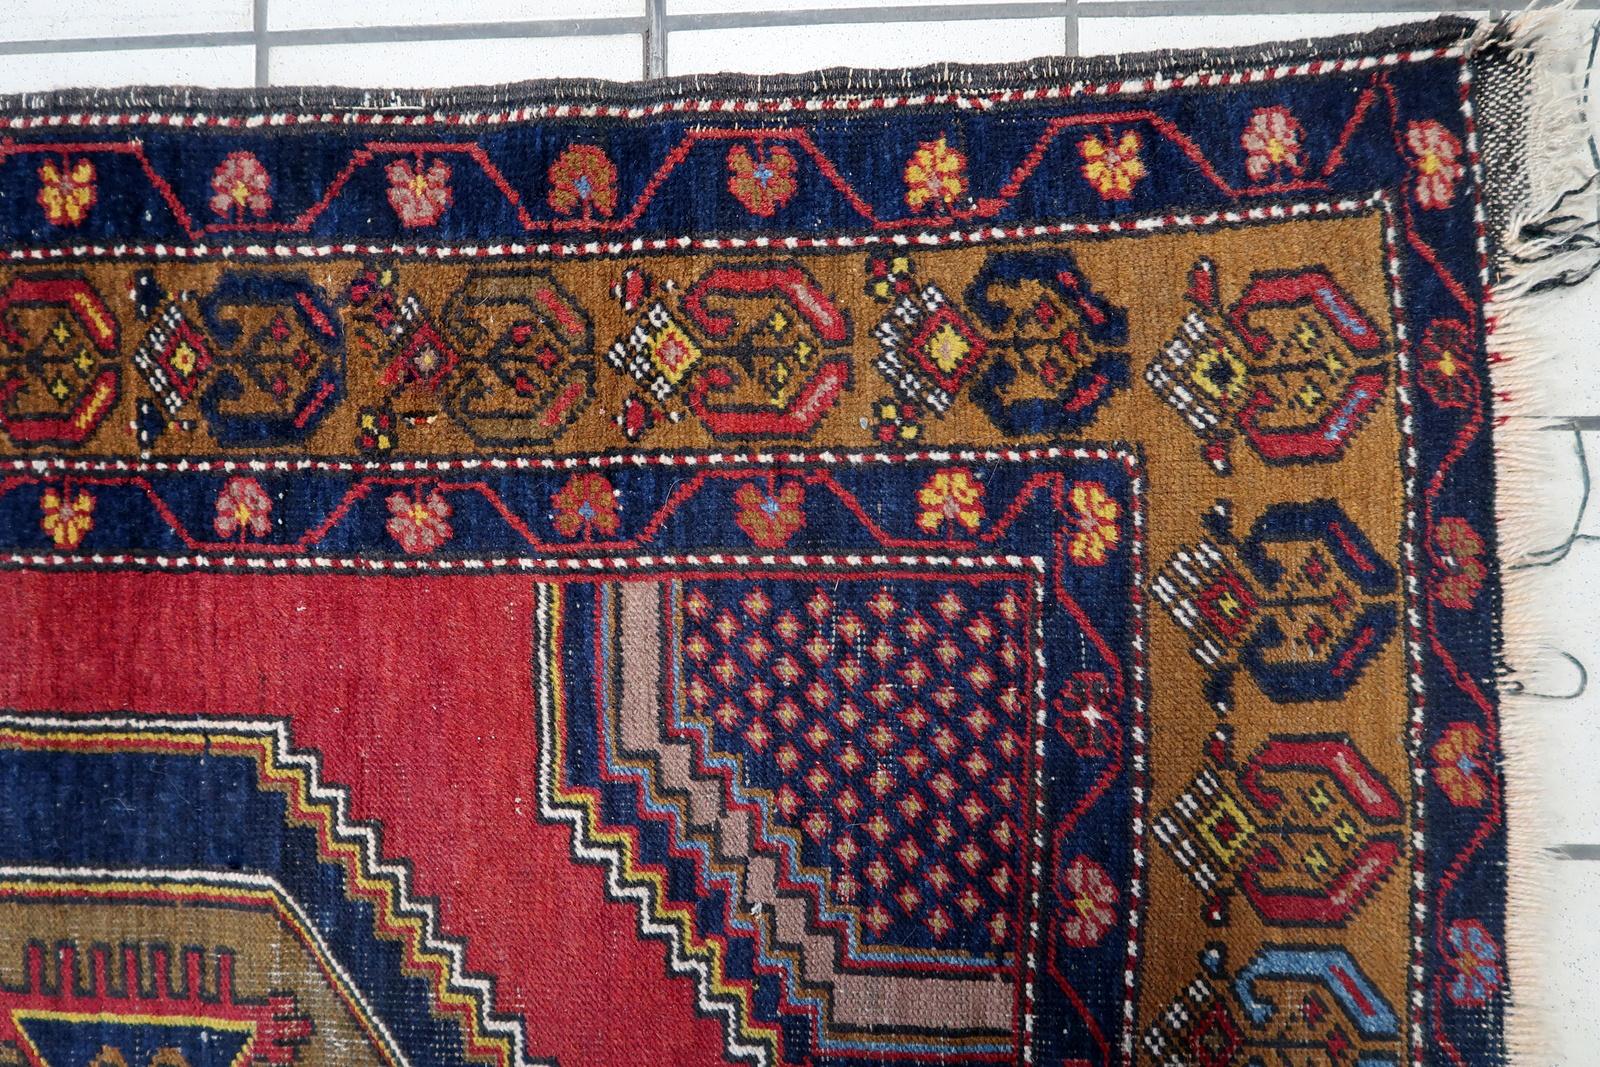 Handgefertigter antiker türkischer Anatolien-Teppich:

Abmessungen: Dieser sorgfältig gefertigte Teppich misst 3,7' x 7,1' (115cm x 218cm), was ihn zu einem großen Stück für größere Räume macht.
Kunstfertigkeit: Dieser aus den 1920er Jahren